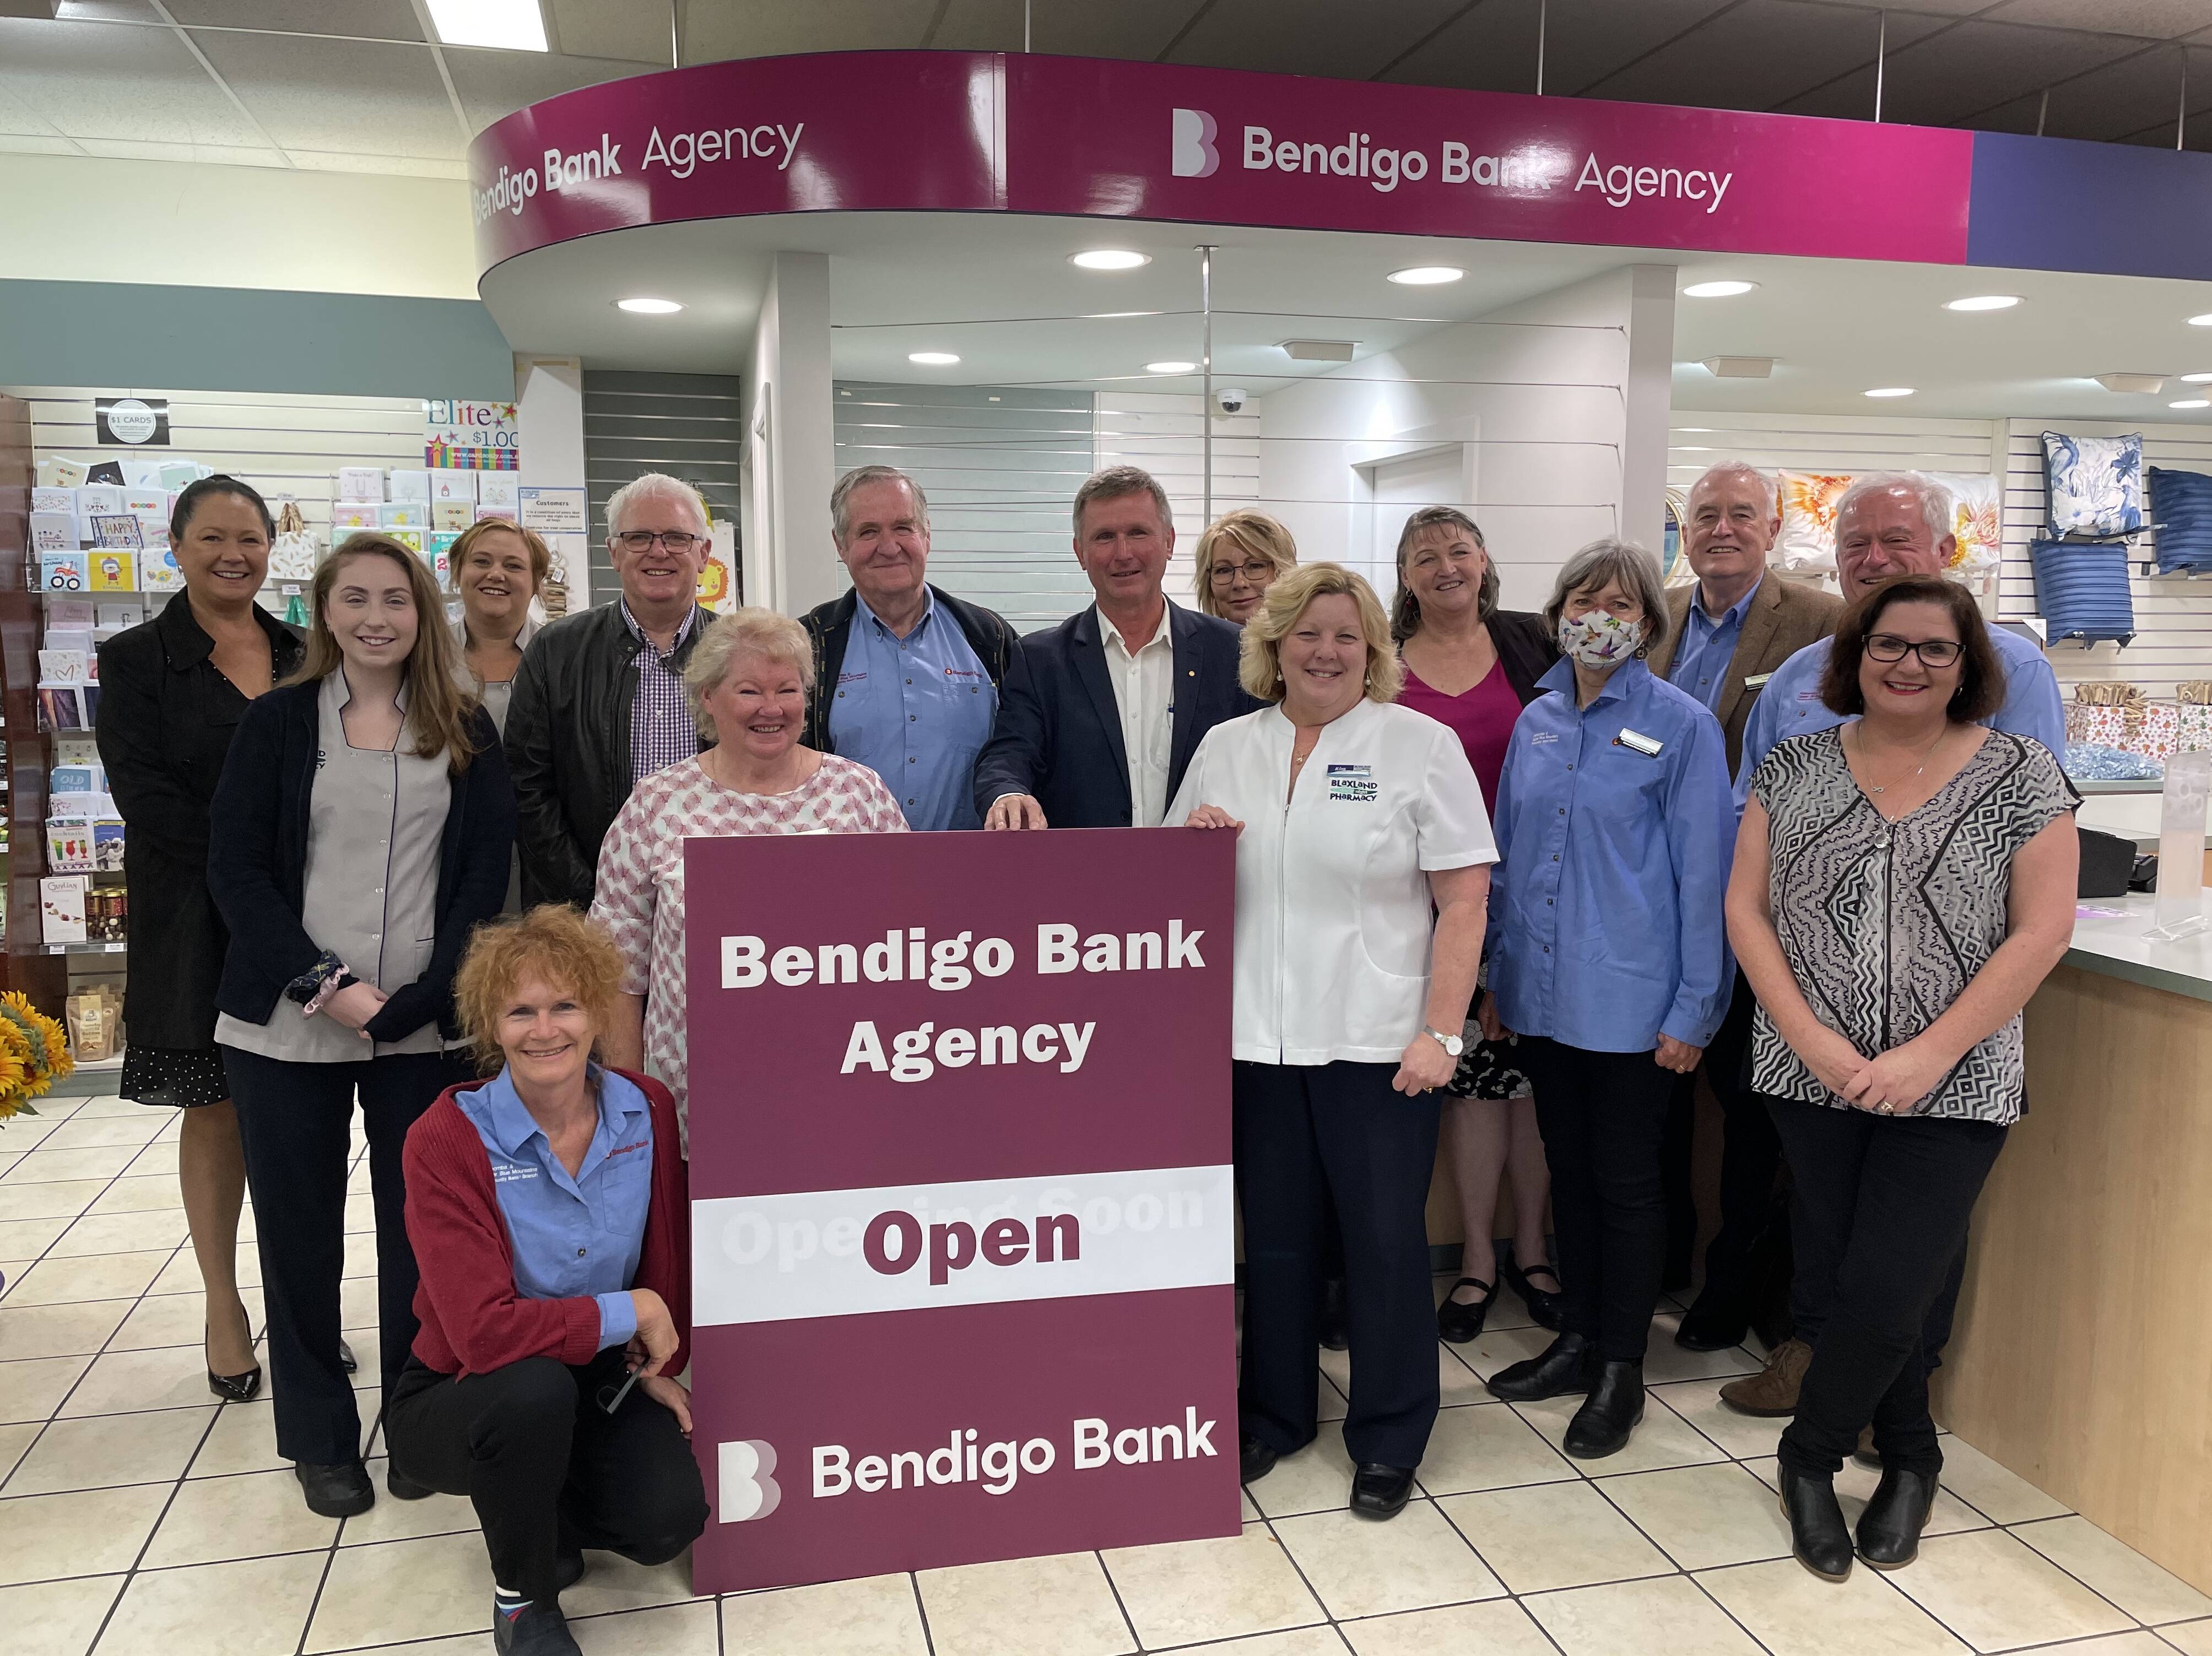 New branch of Bendigo in Blaxland, Blue Mountains Gazette